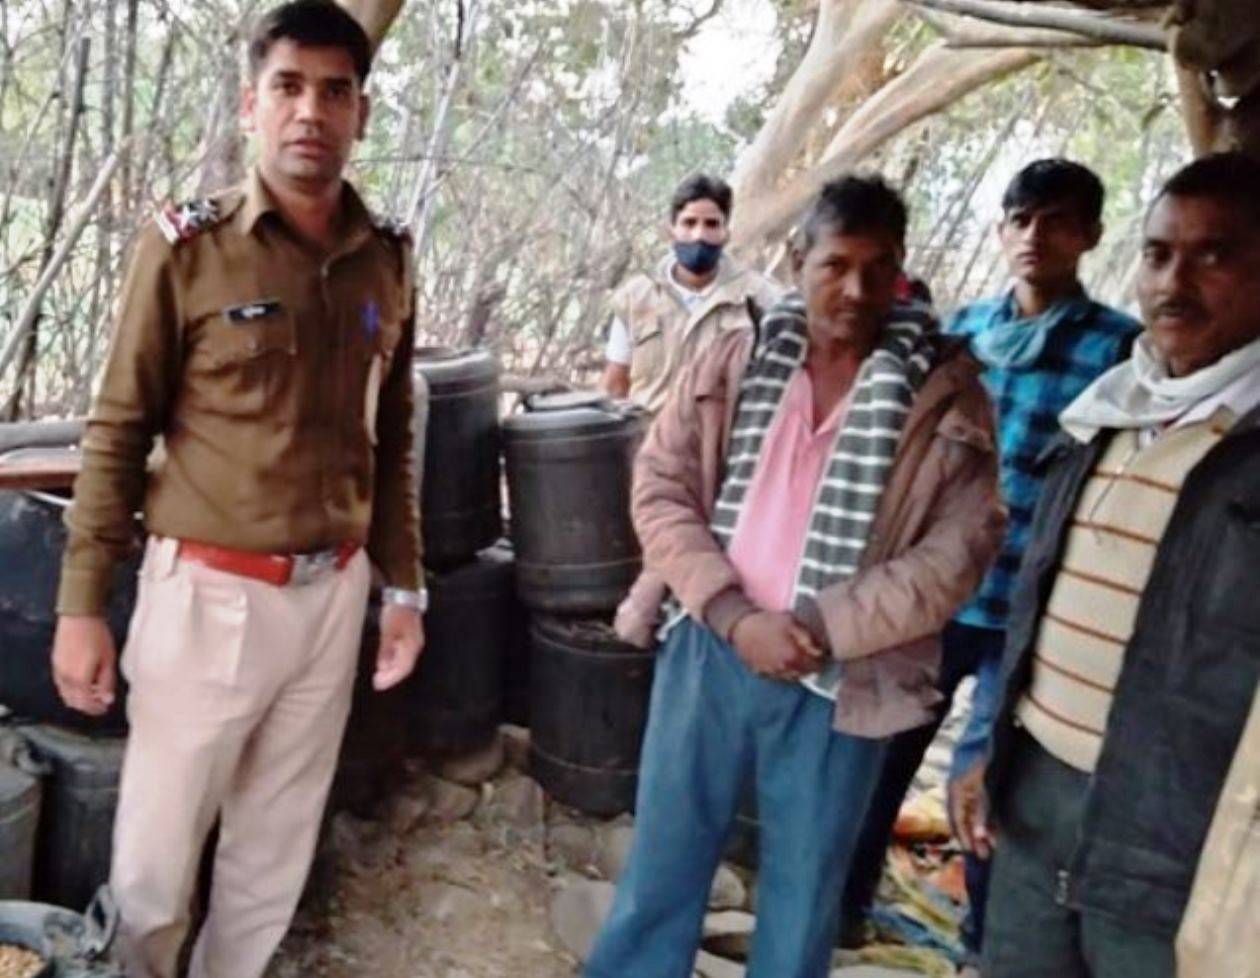 उदयपुर पिंडवाड़ा हाइवे पर उखलियात सुरंग के पास पत्थरबाज़ी कर लूट का प्रयास करते 3 गिरफ्तार